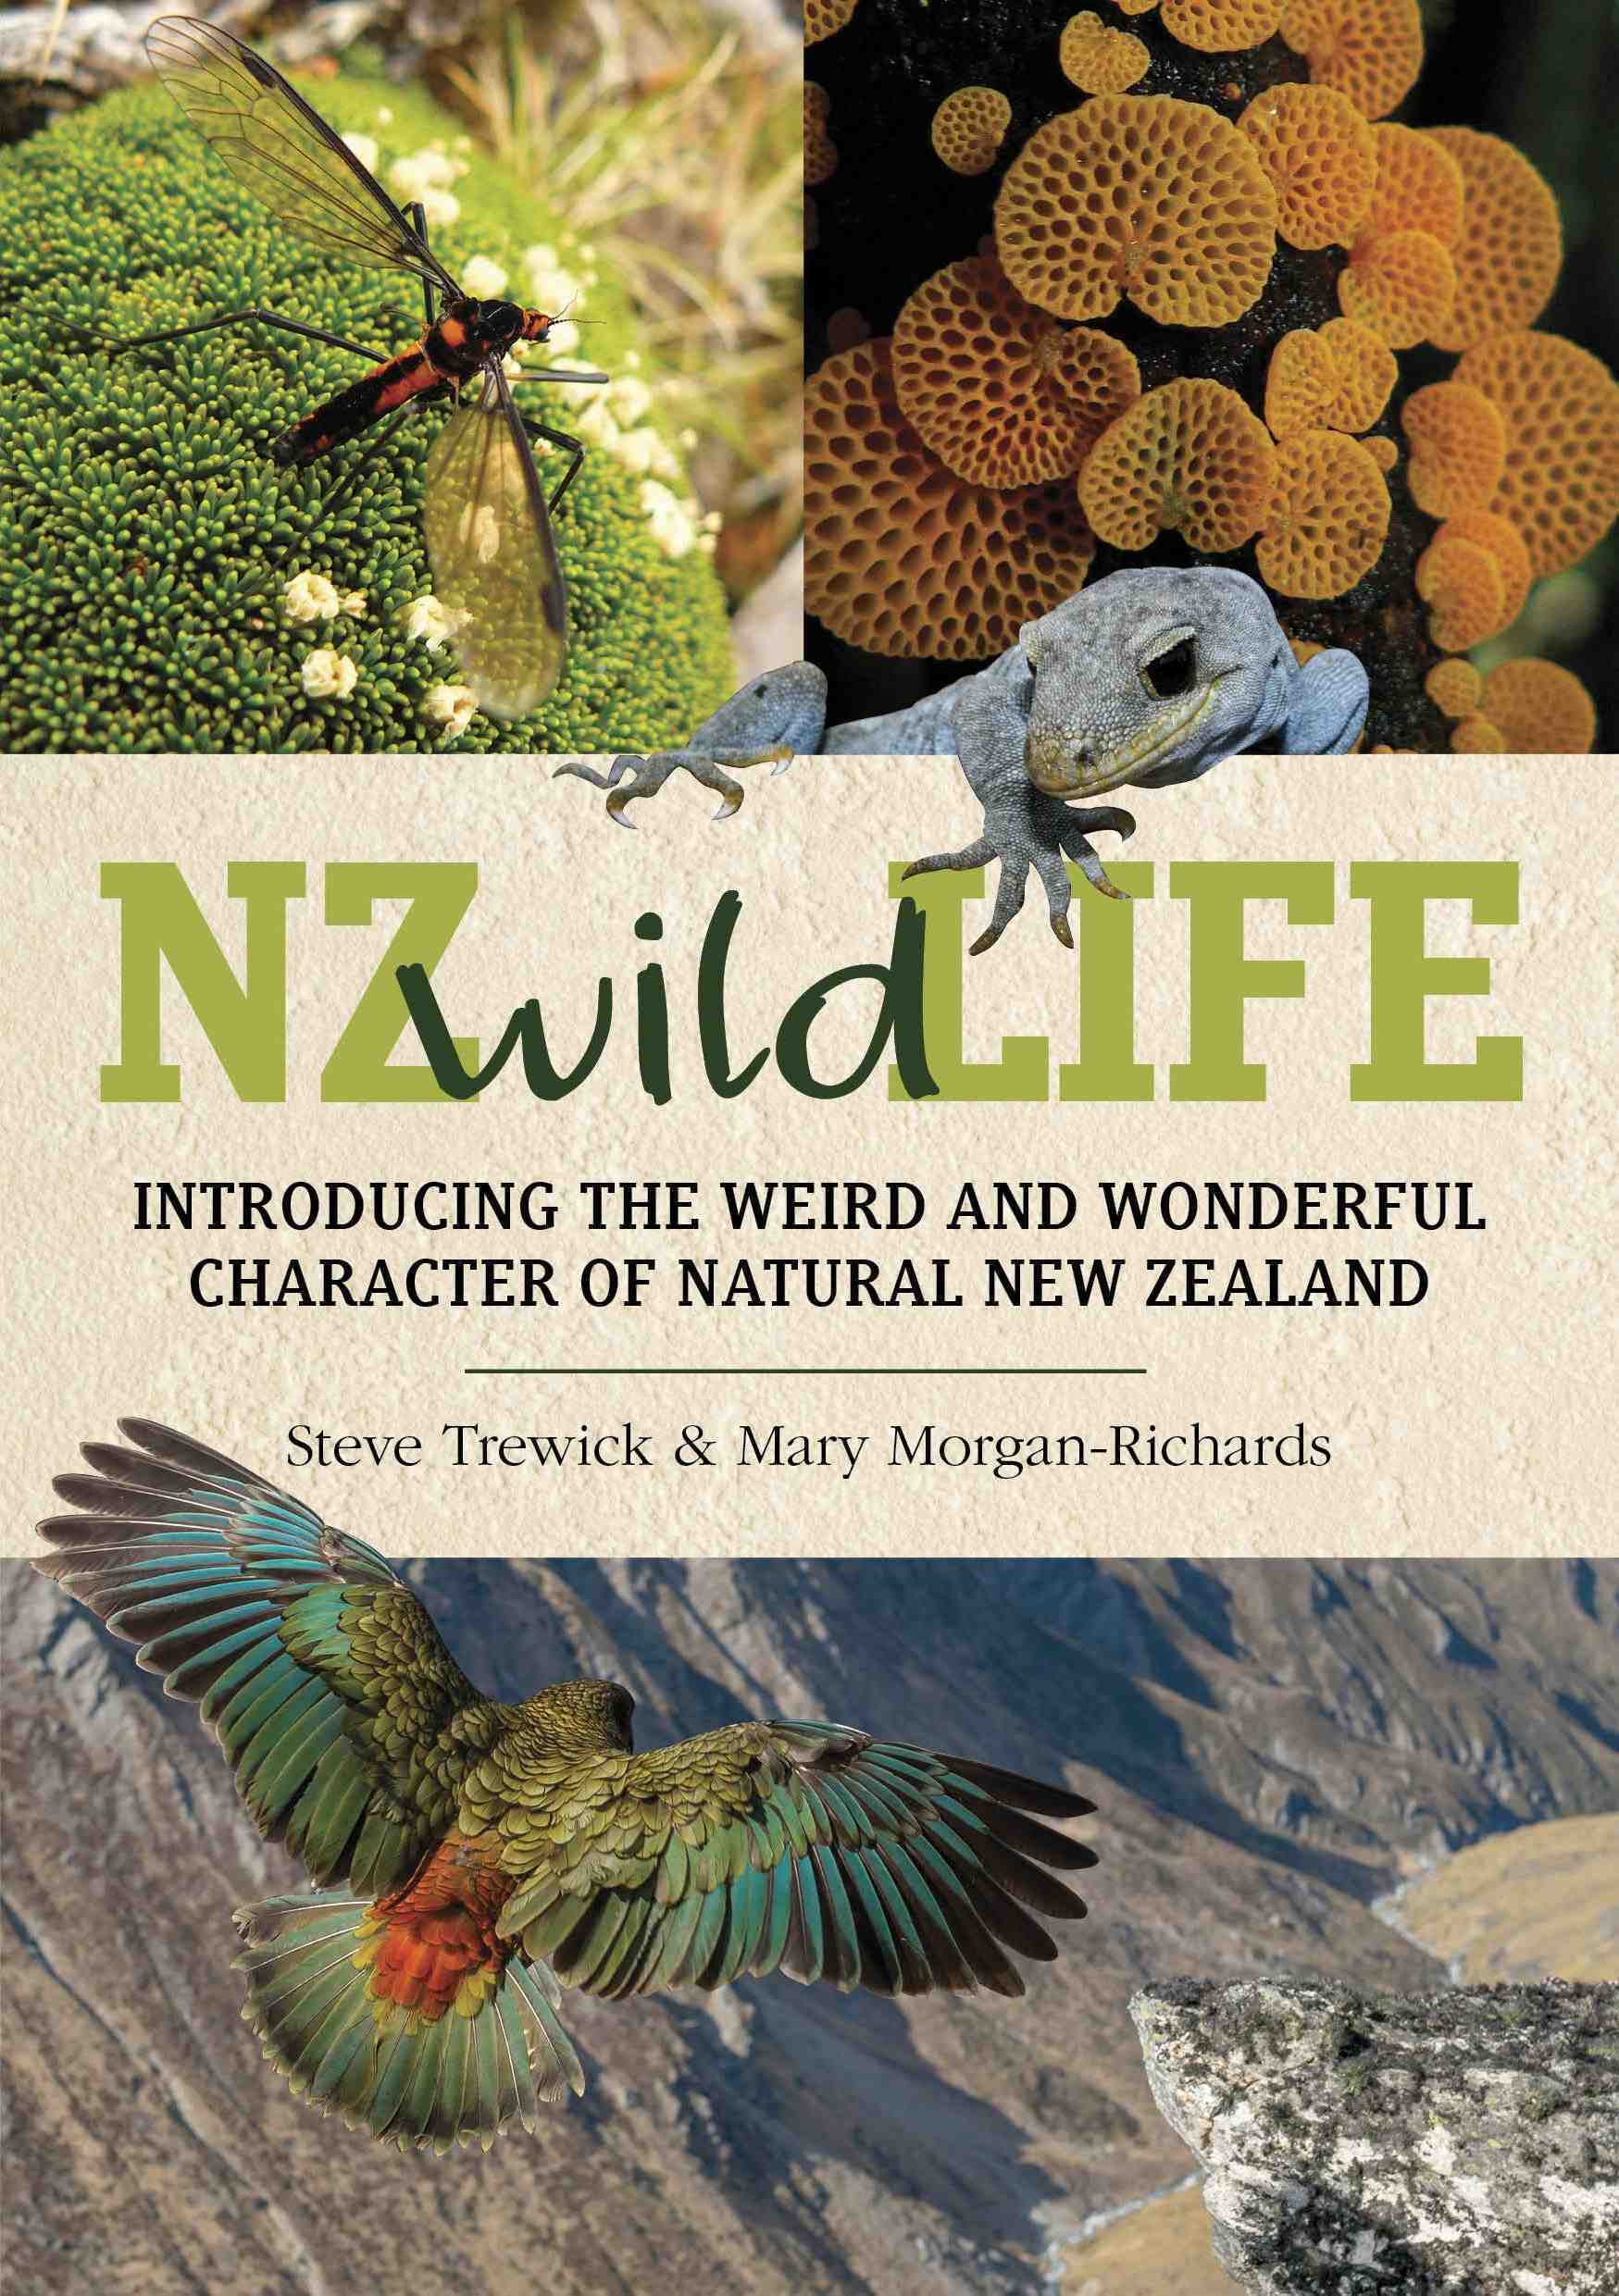 NZ wild life book